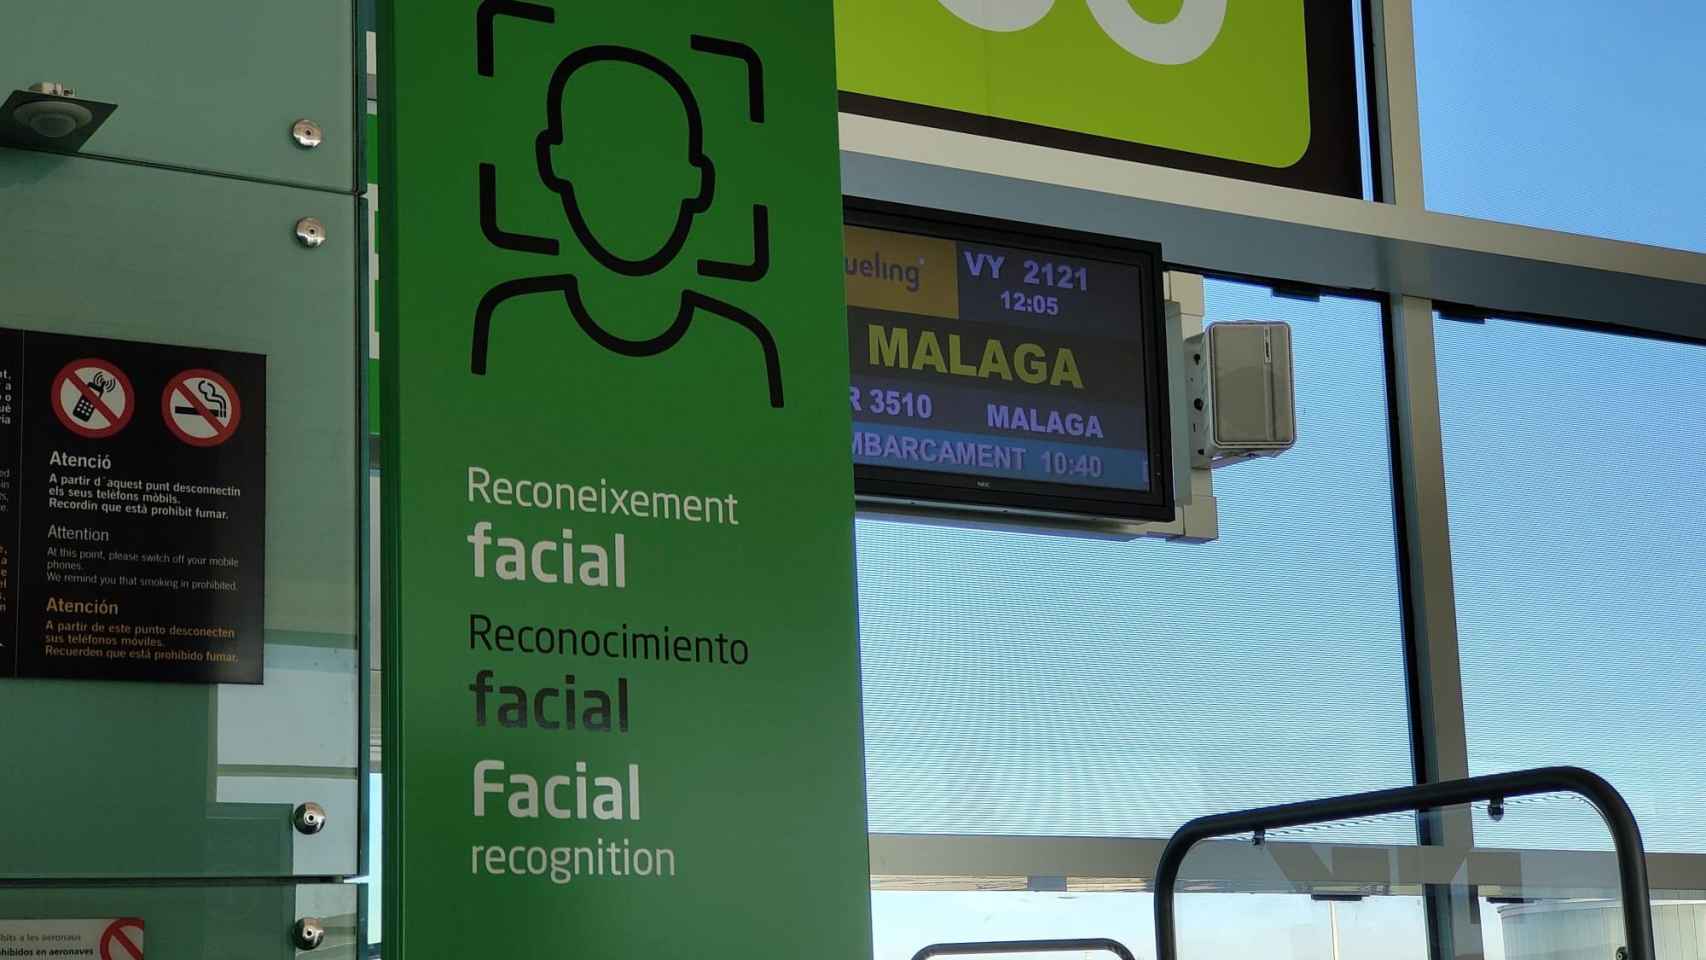 La puerta de embarque al vuelo de Vueling de Barcelona a Málaga para acceder mediante reconocimiento facial / CM